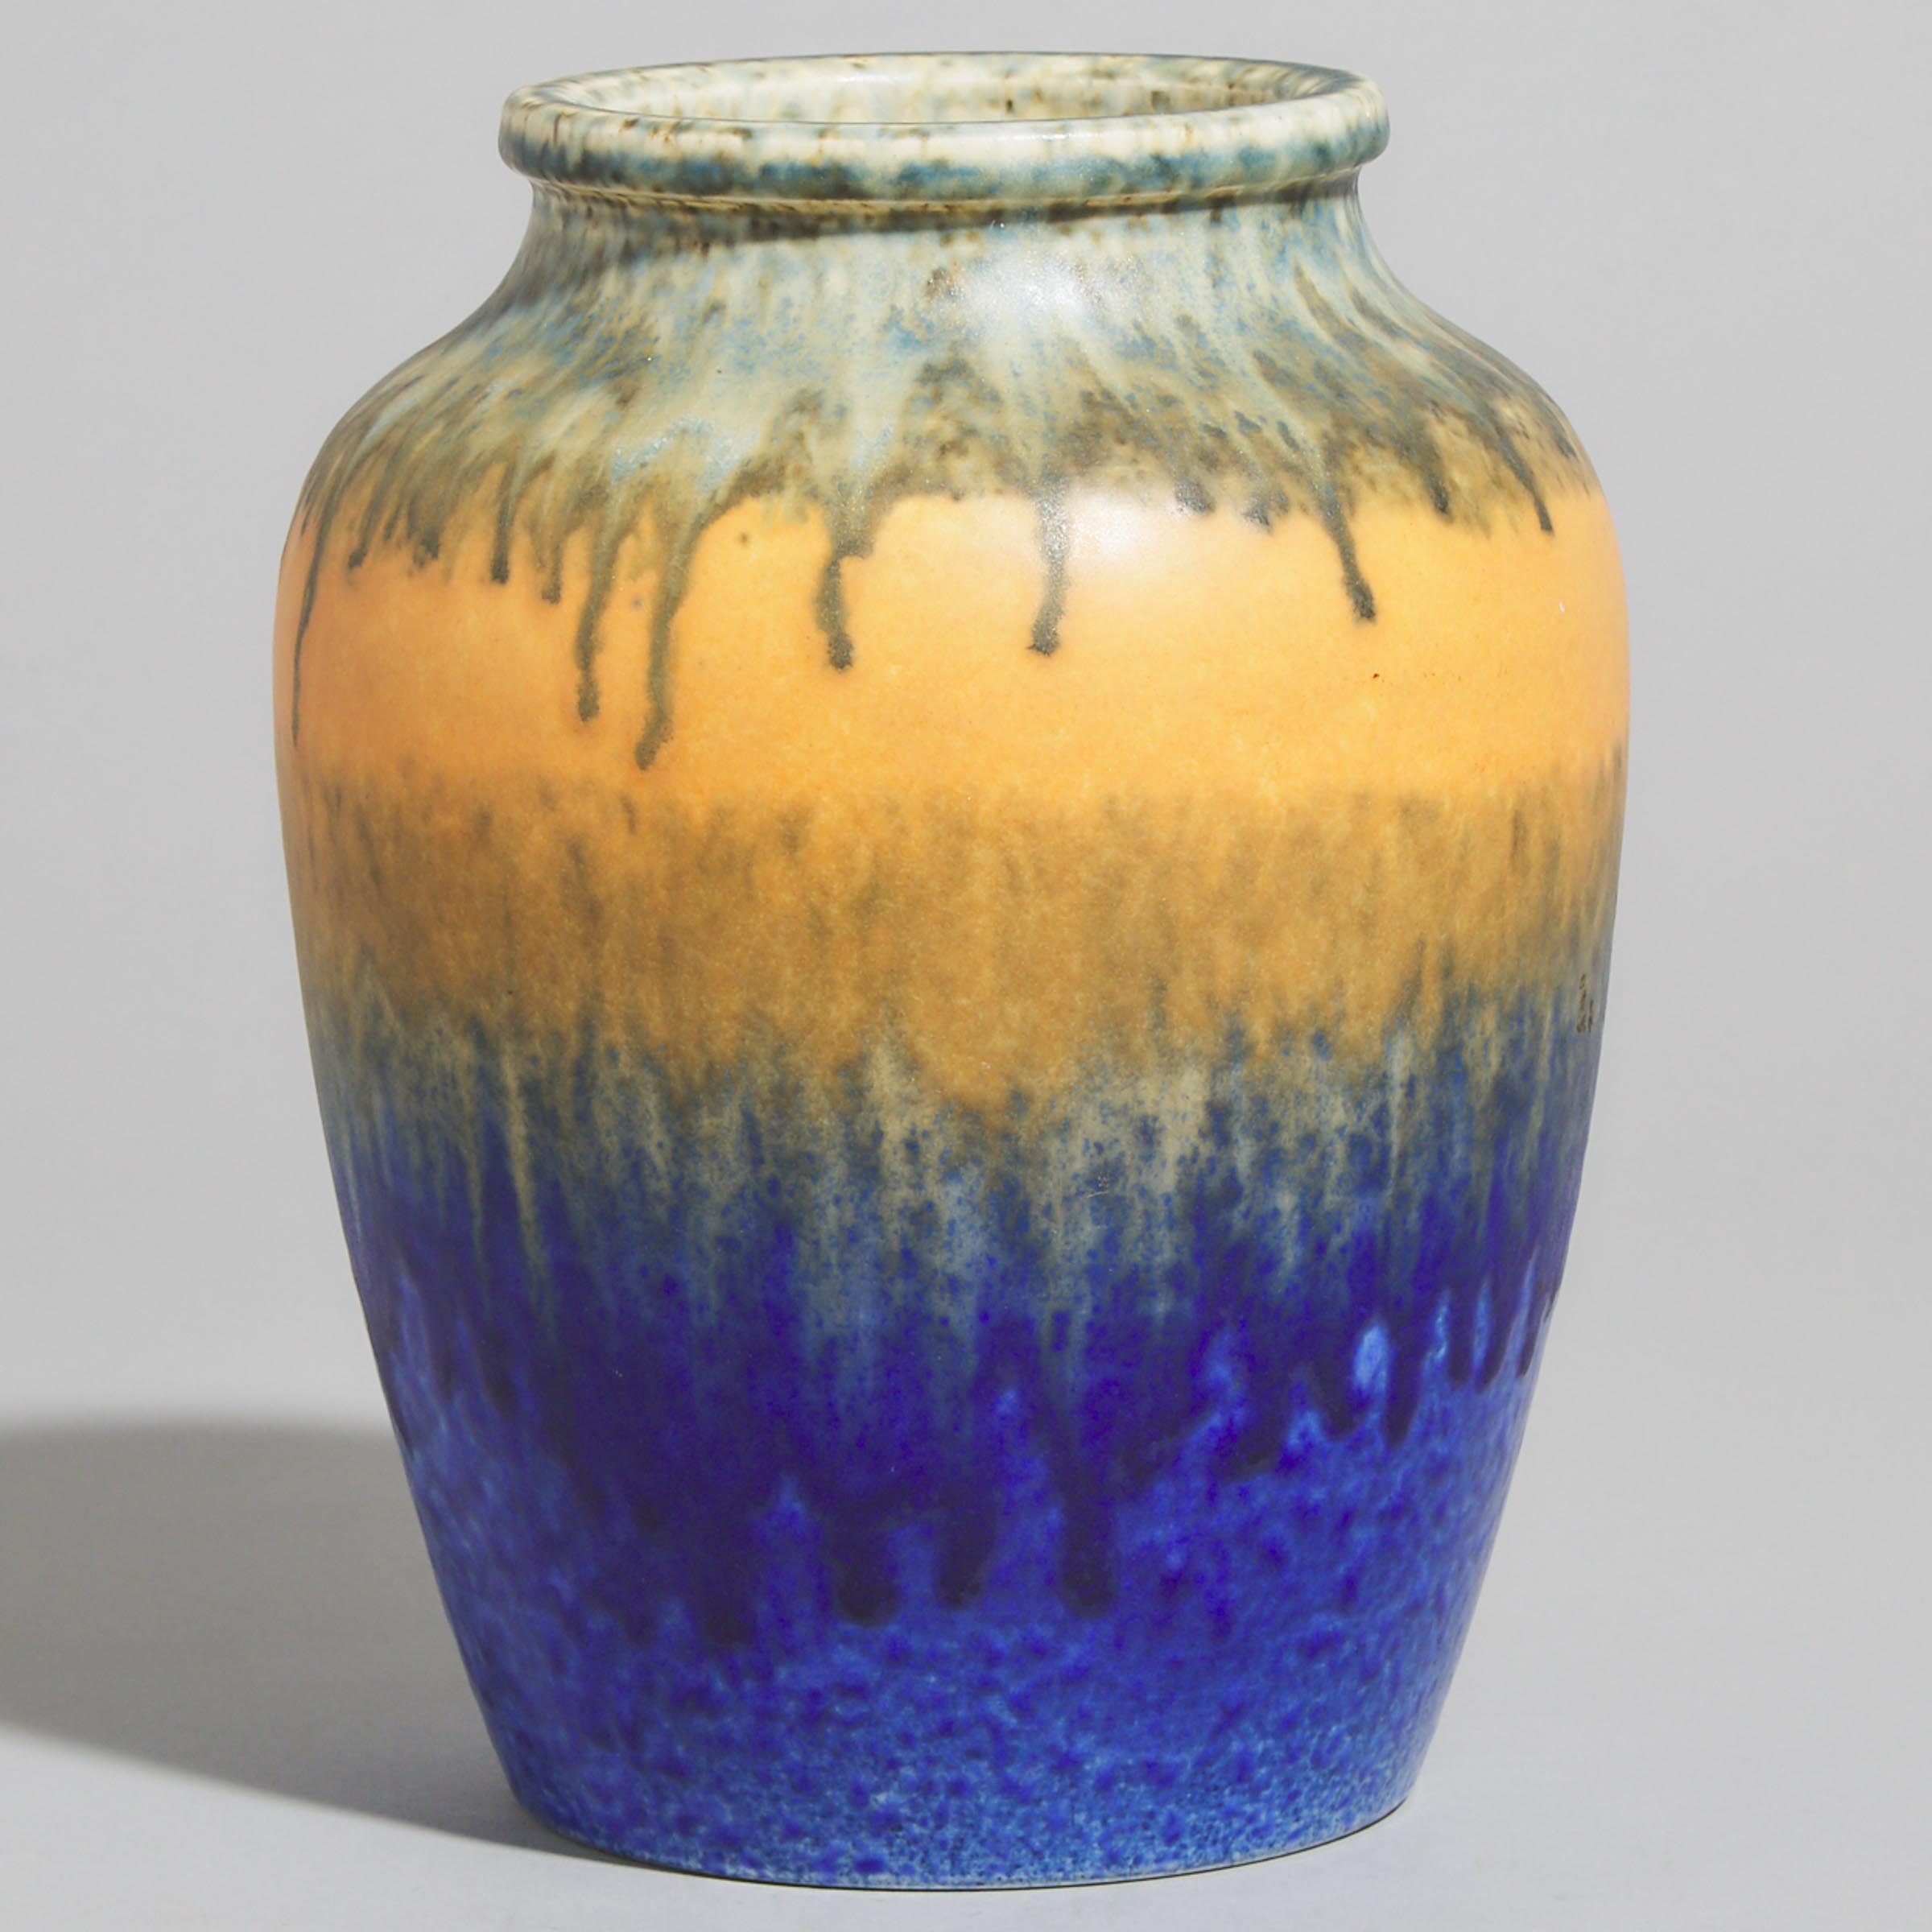 Ruskin Mottled Blue, Orange, and Green Glazed Vase, 1930